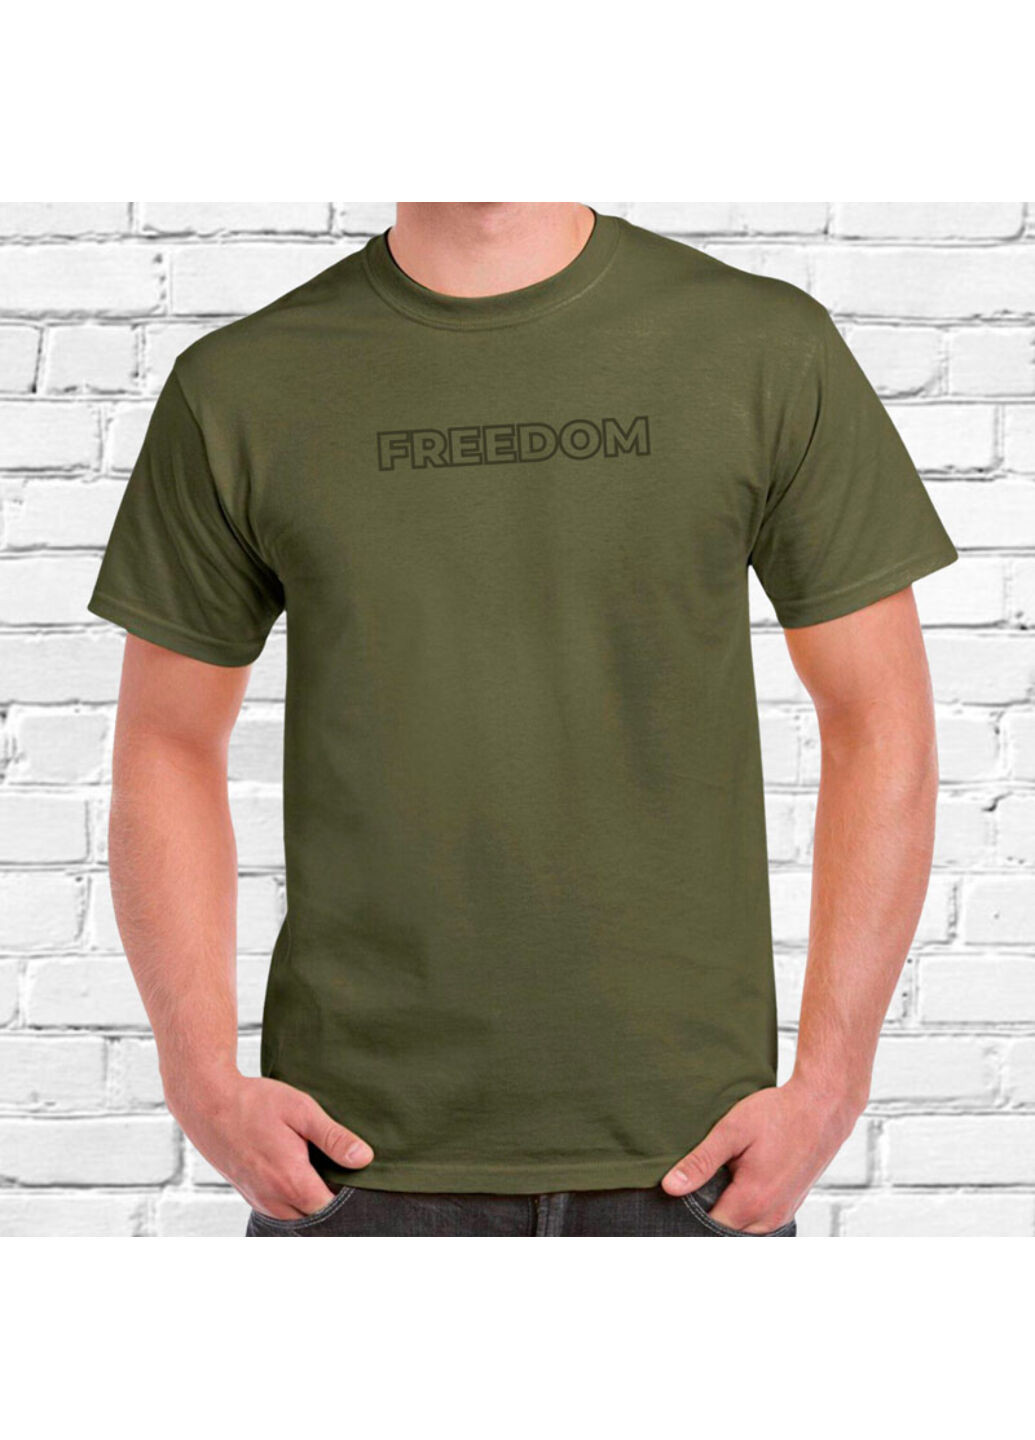 Хаки (оливковая) футболка з вишивкою зеленим freedom мужская хаки l No Brand